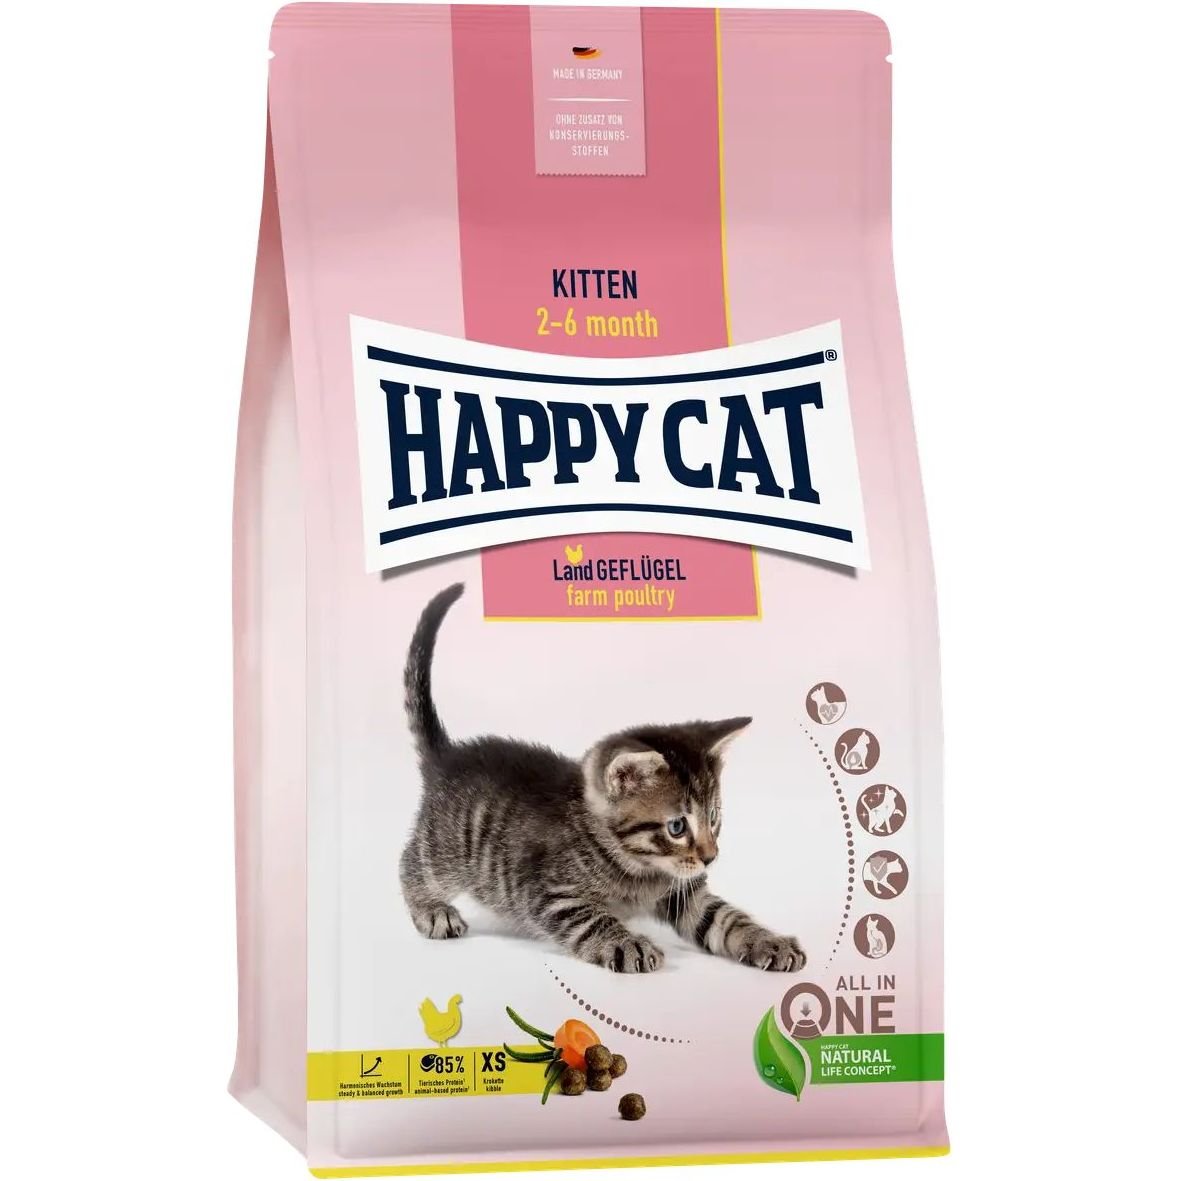 Сухой корм для котят Happy Cat Kitten Land Geflügel, со вкусом птицы, 1,3 кг - фото 1